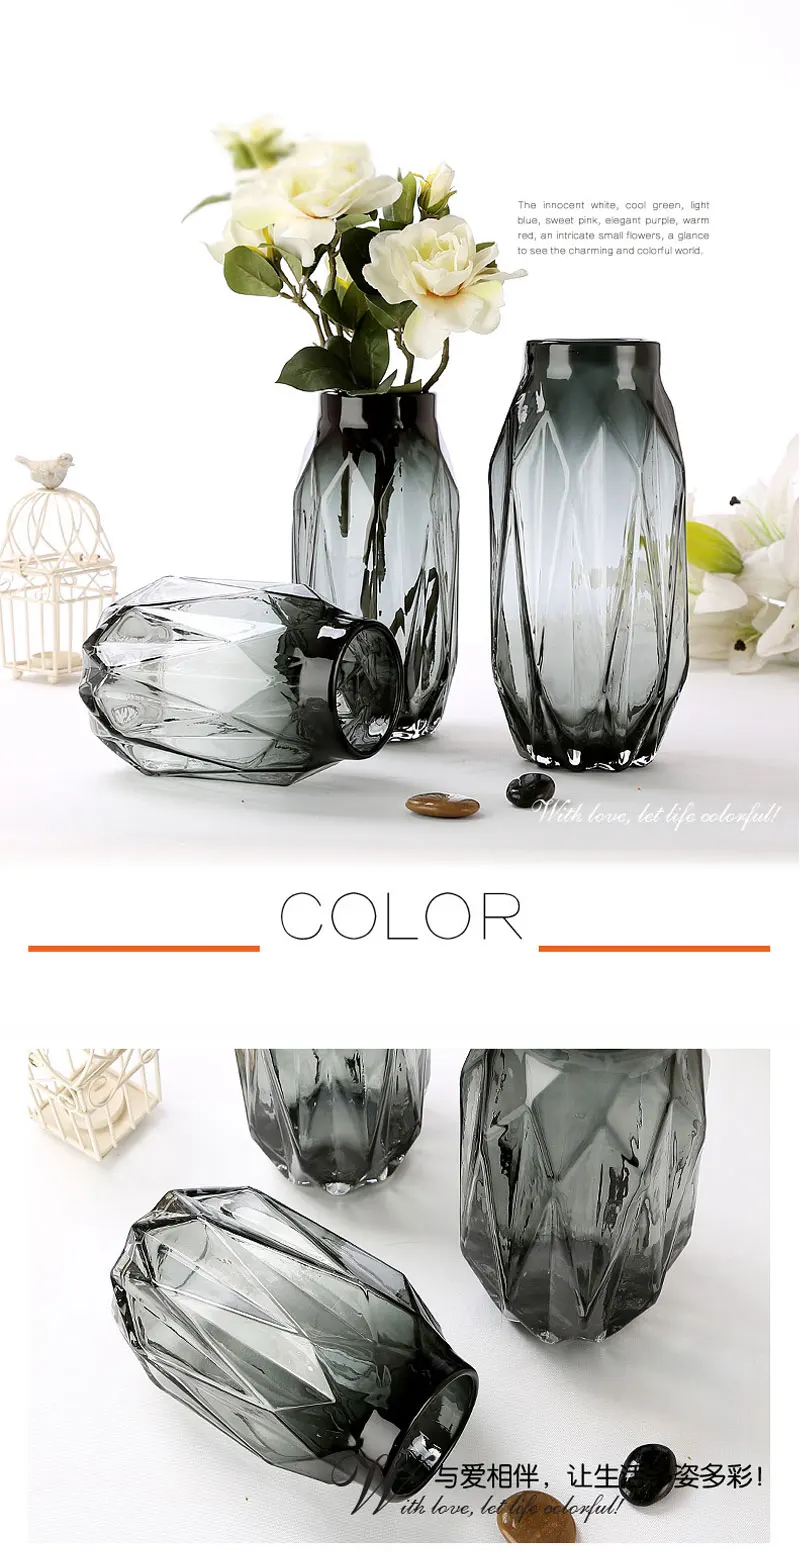 Стекло ваза, домашний декор алмазов складки ваза из цветного стекла Nordic гостиная для декора; ваза с цветами минималистский ornamen